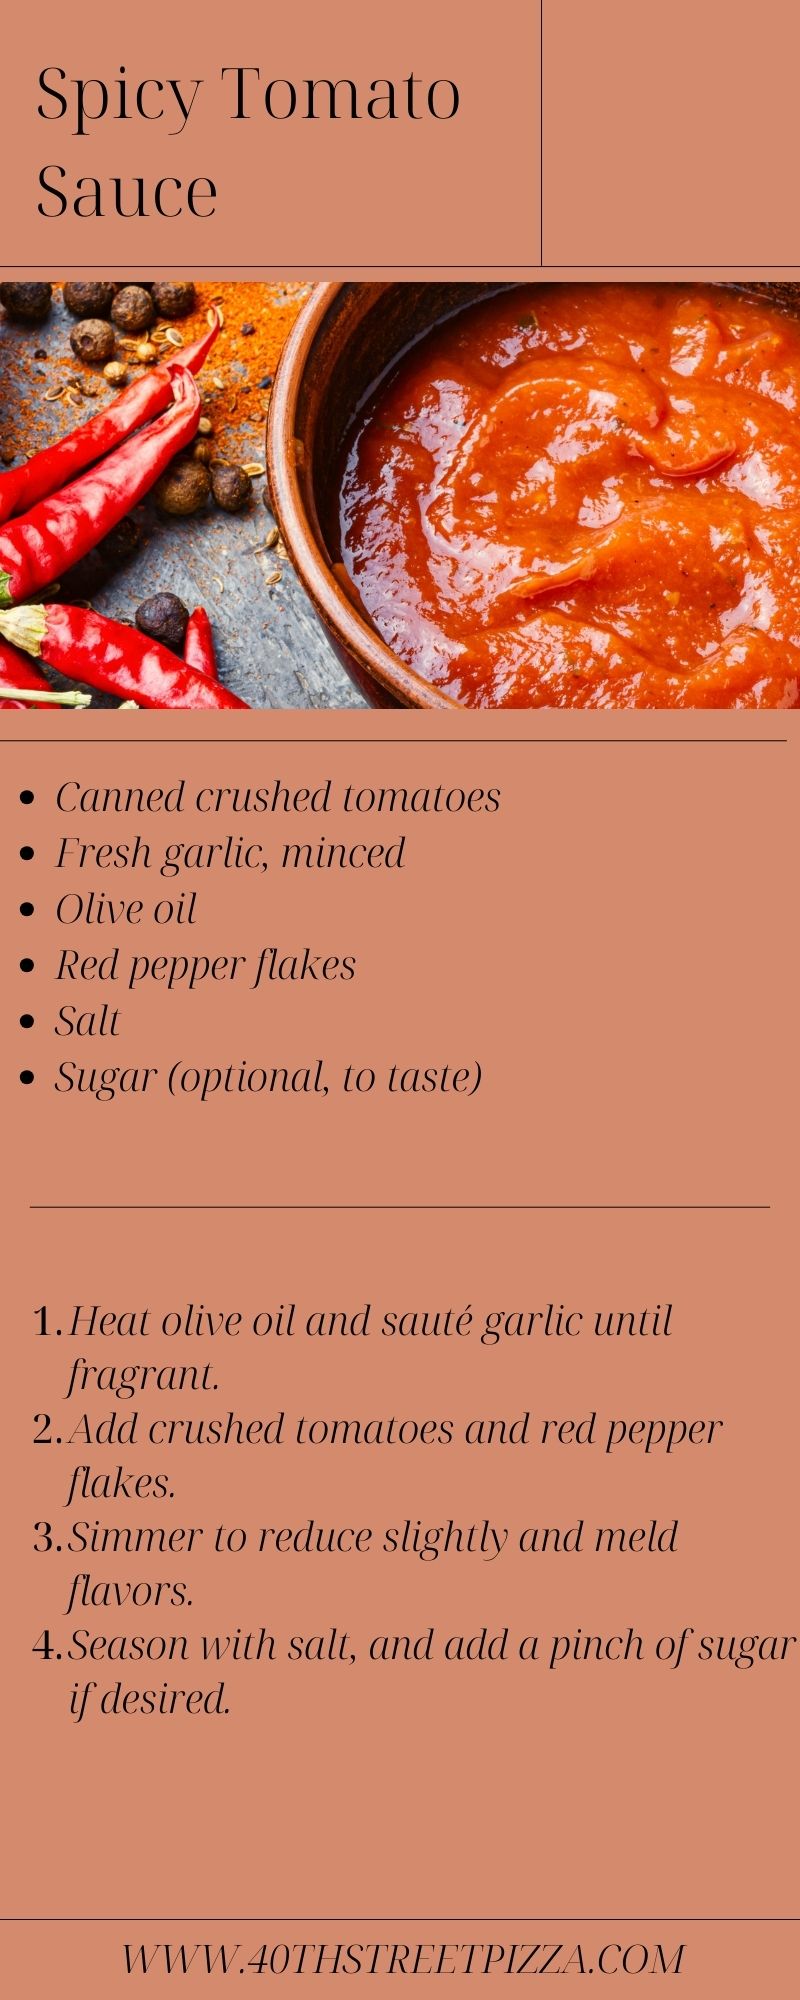 Spicy Tomato Sauce infographic